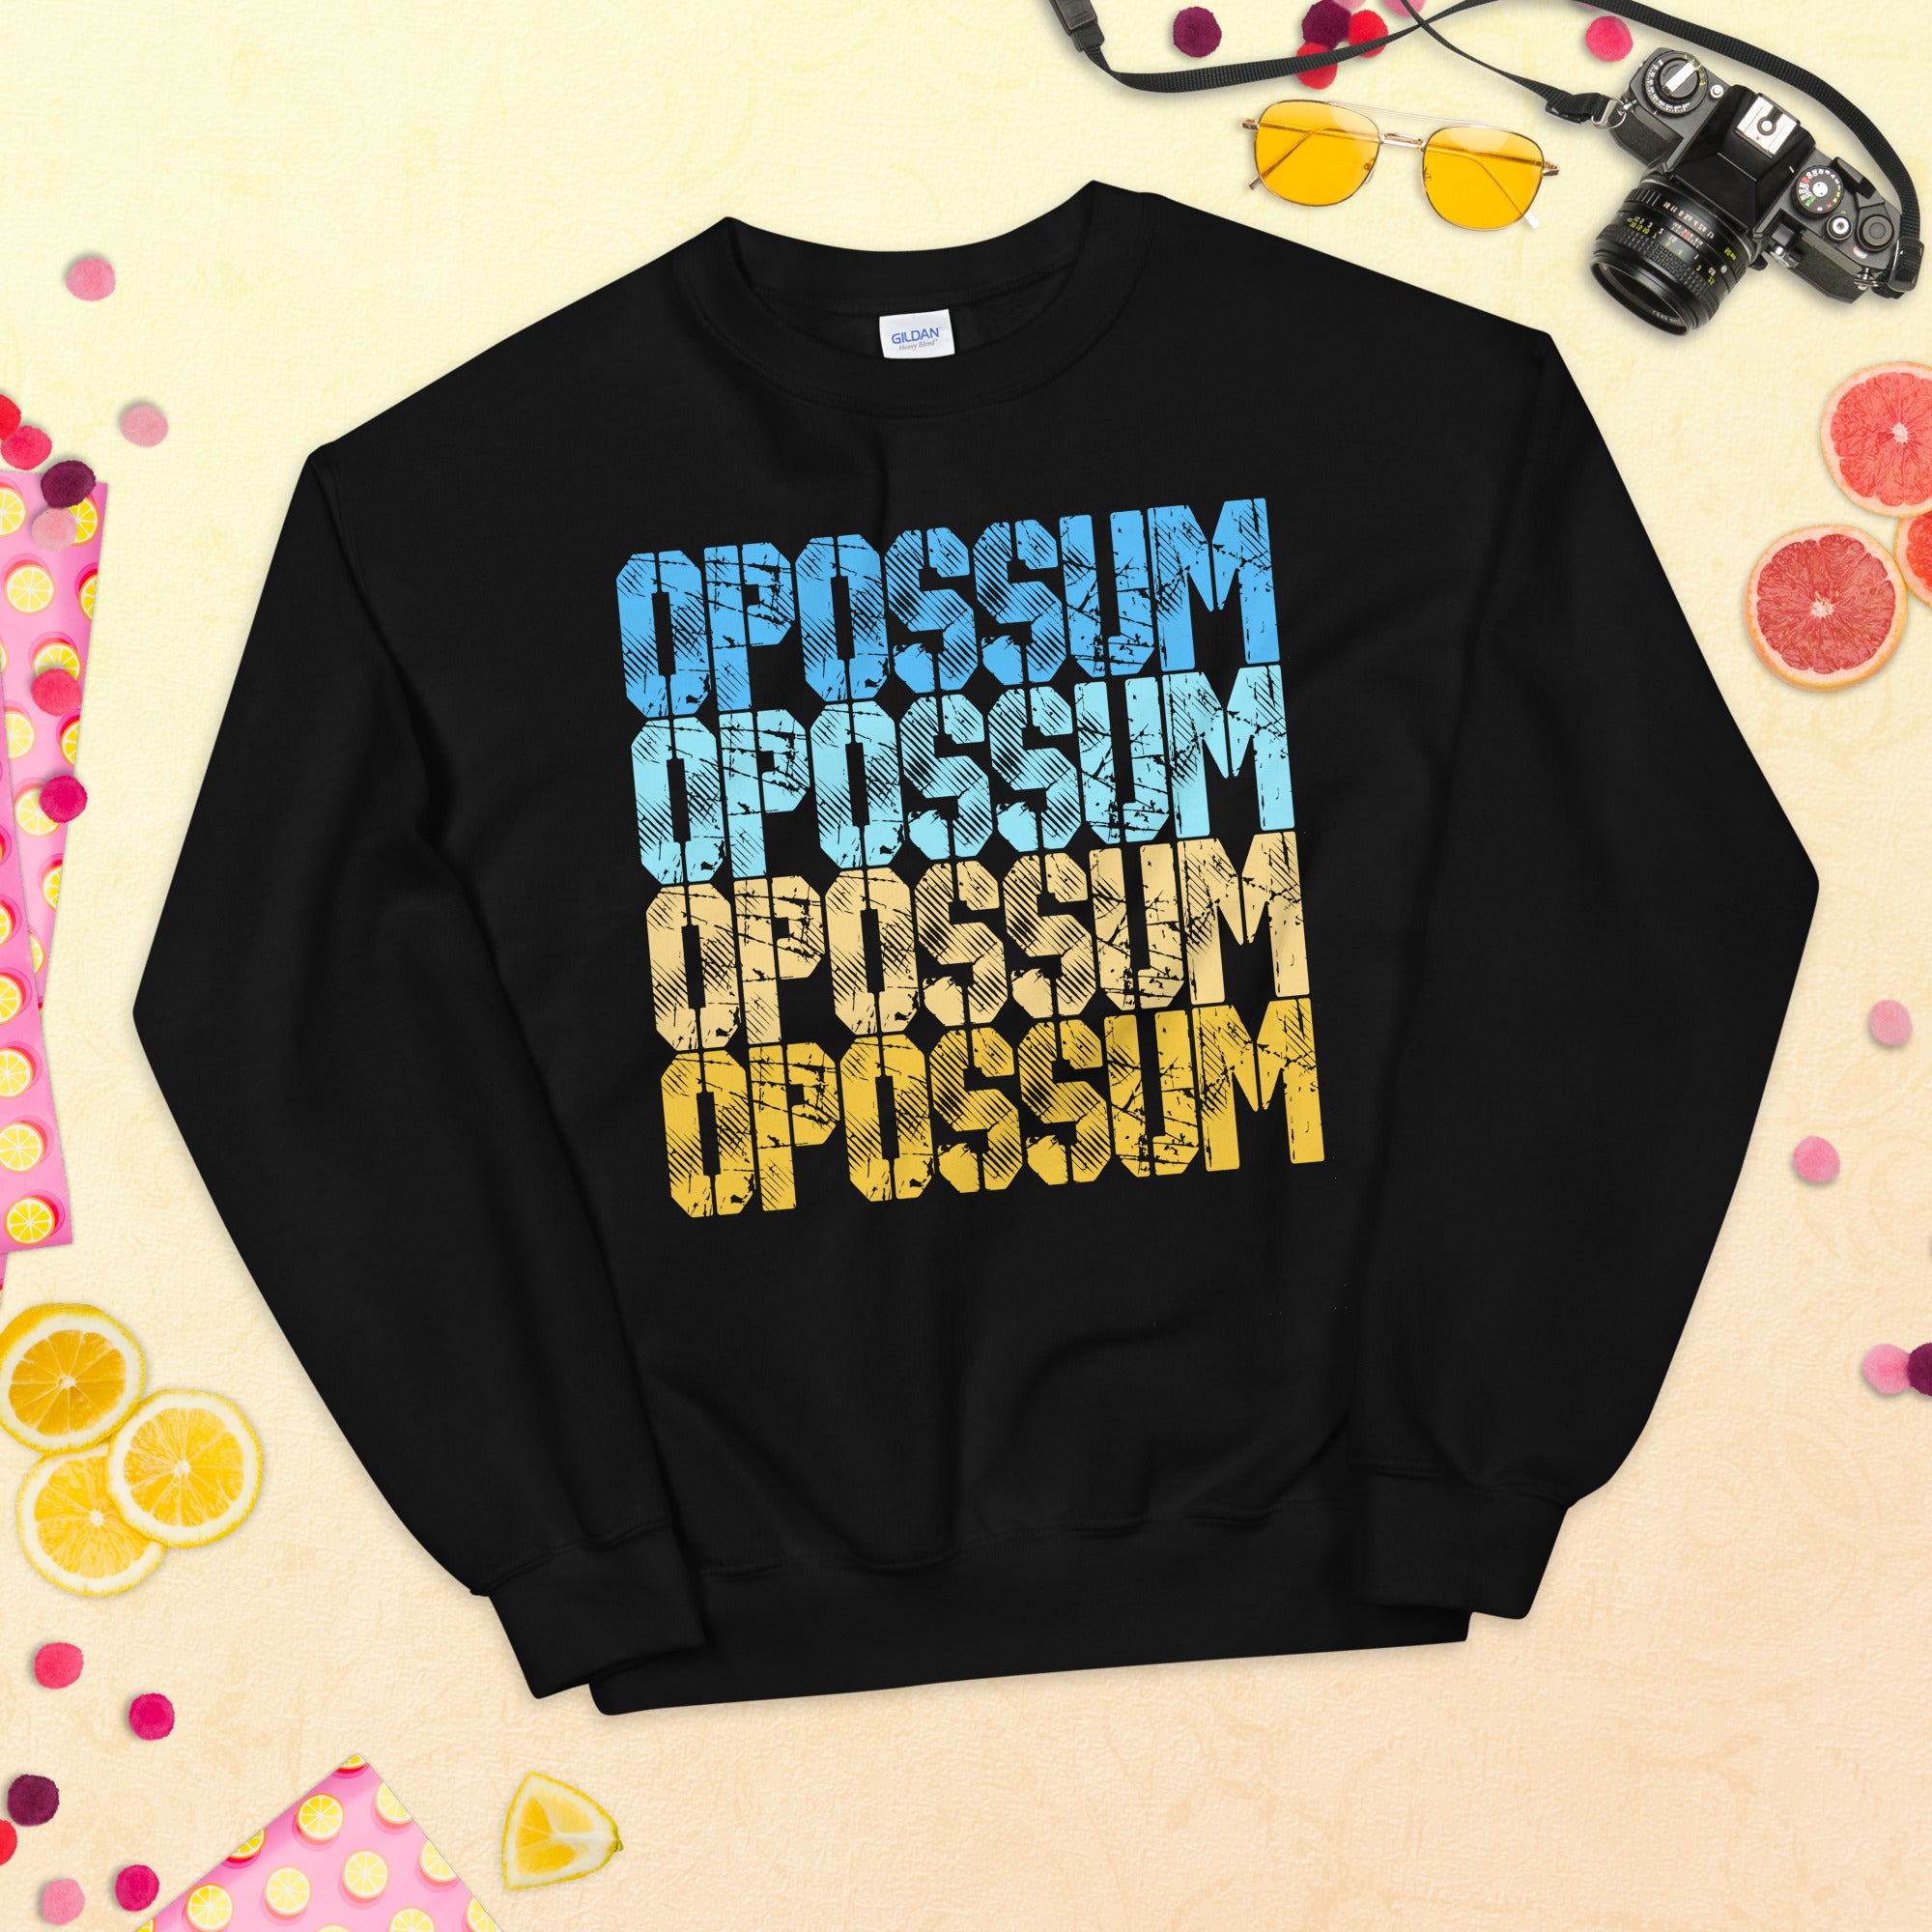 Opossum Sweatshirt, Opossum Shirt, Possum Gifts, Awesome Possum, Vintage Opossum Sweater, Opossum Owner, Opossum Funny Shirt, Cute Opossum